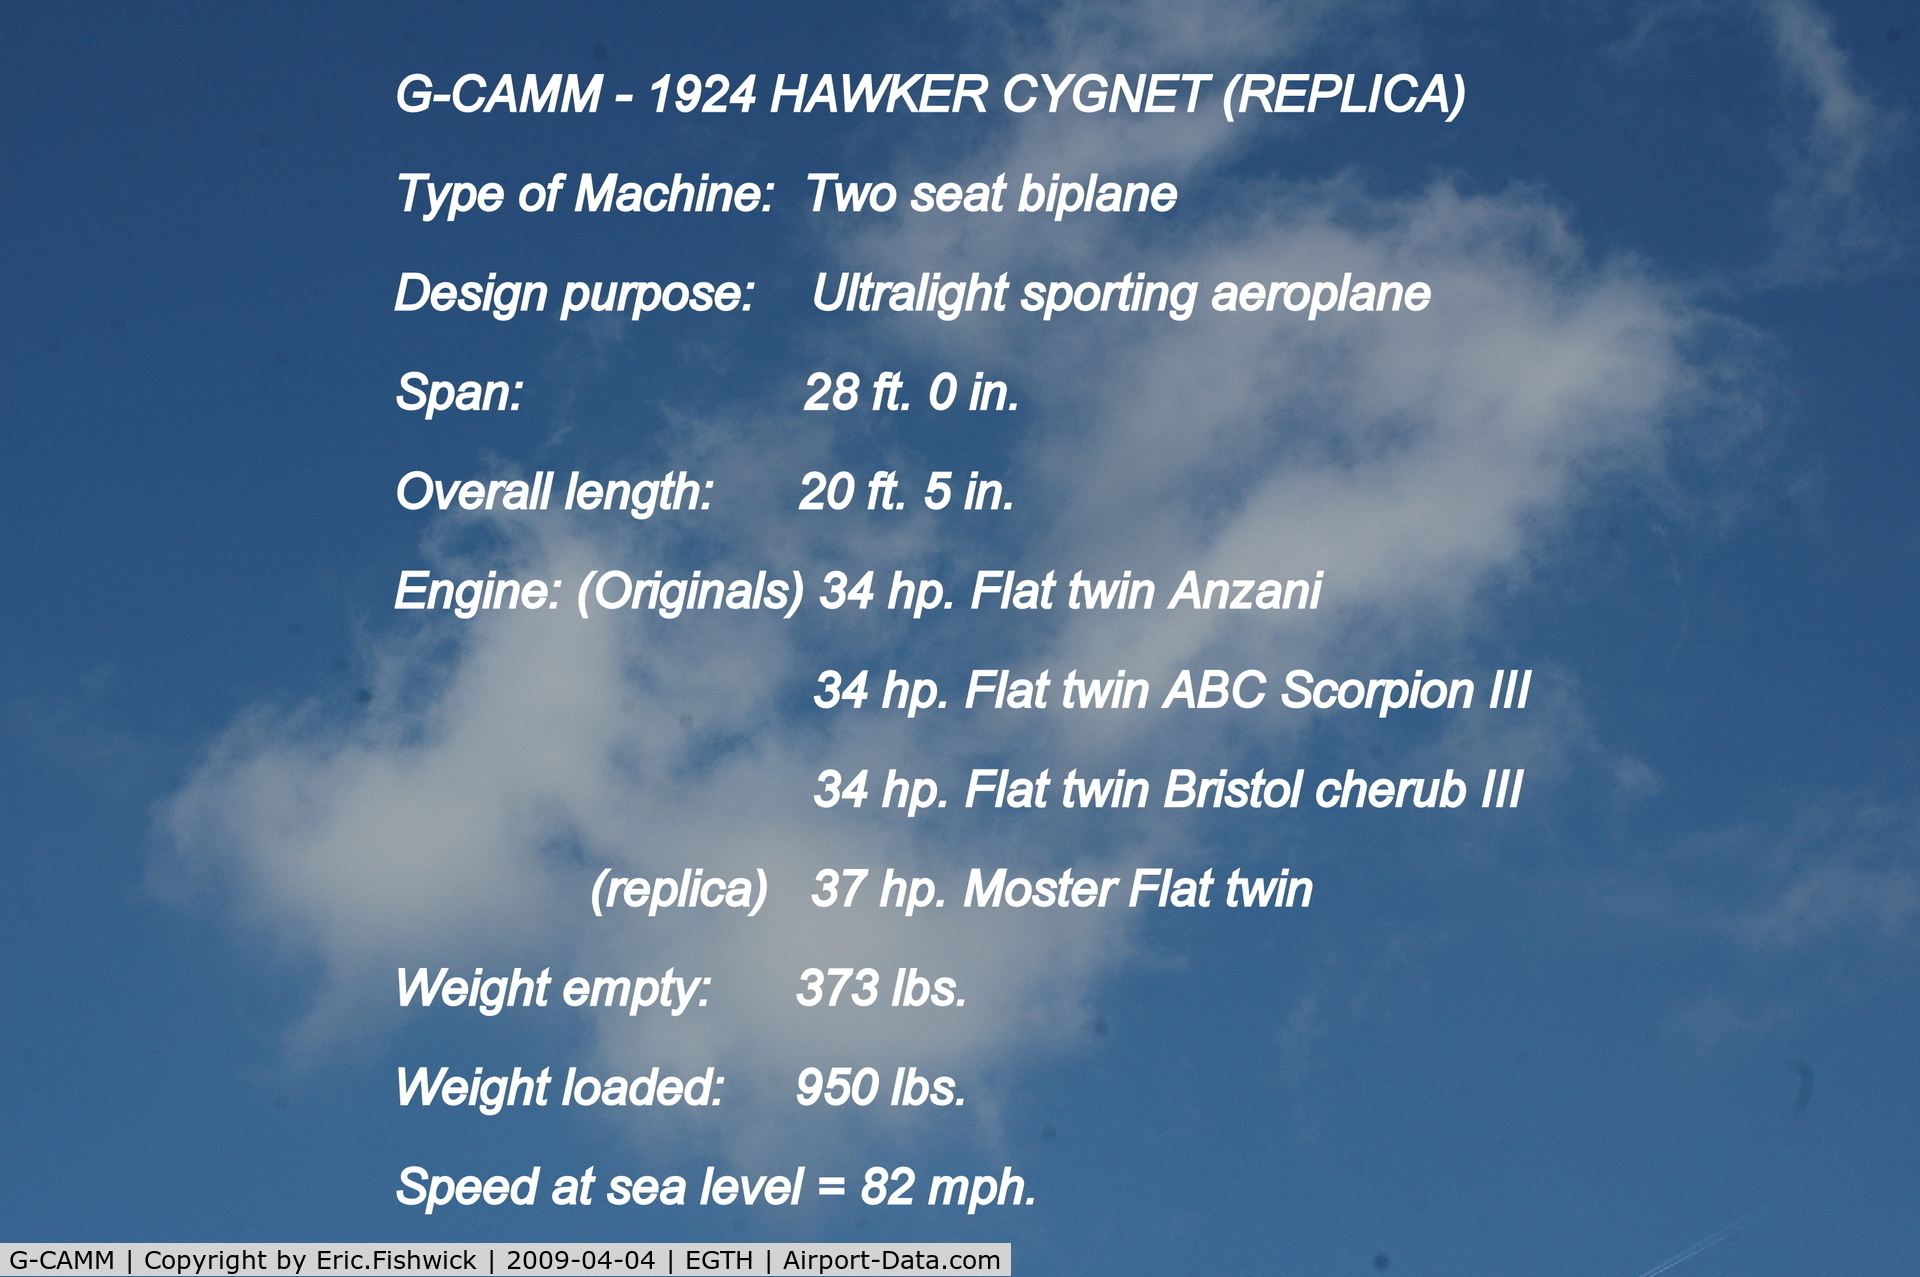 G-CAMM, 1992 Hawker Cygnet Replica C/N PFA 077-10245, DESCRIPTION